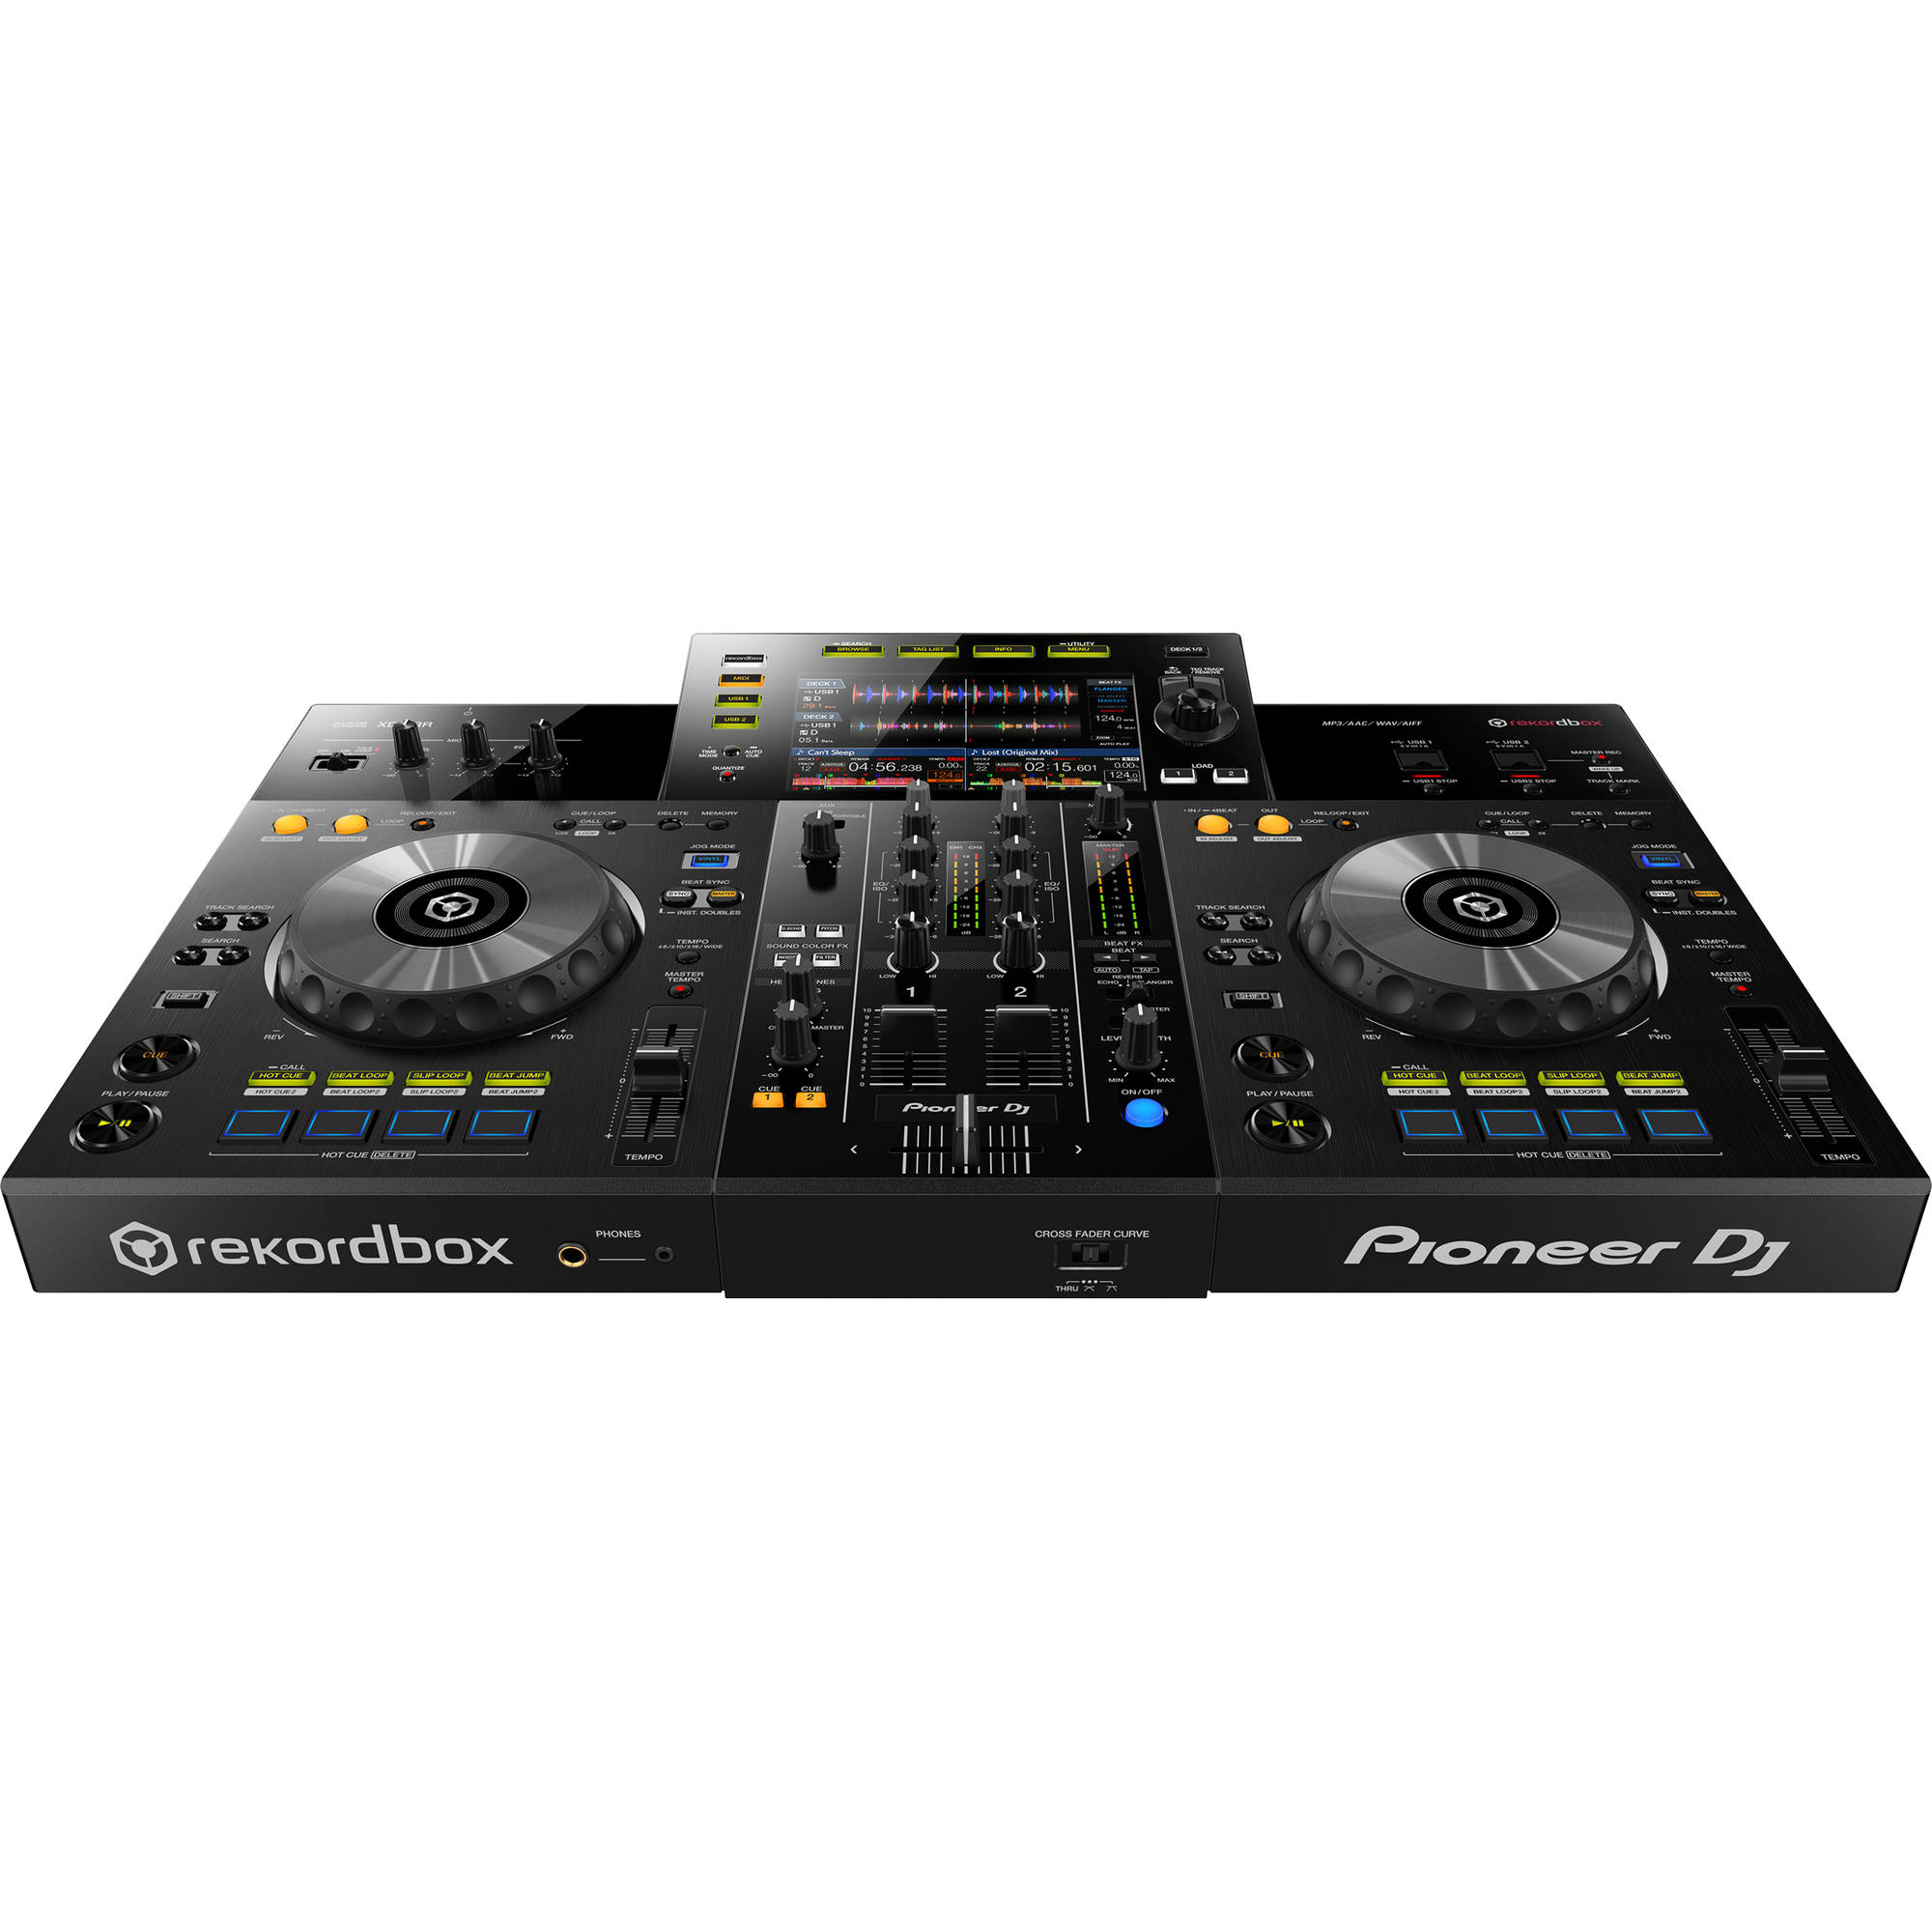 XDJ-RR Sistema DJ todo en uno de 2 canales (negro) - Pioneer DJ